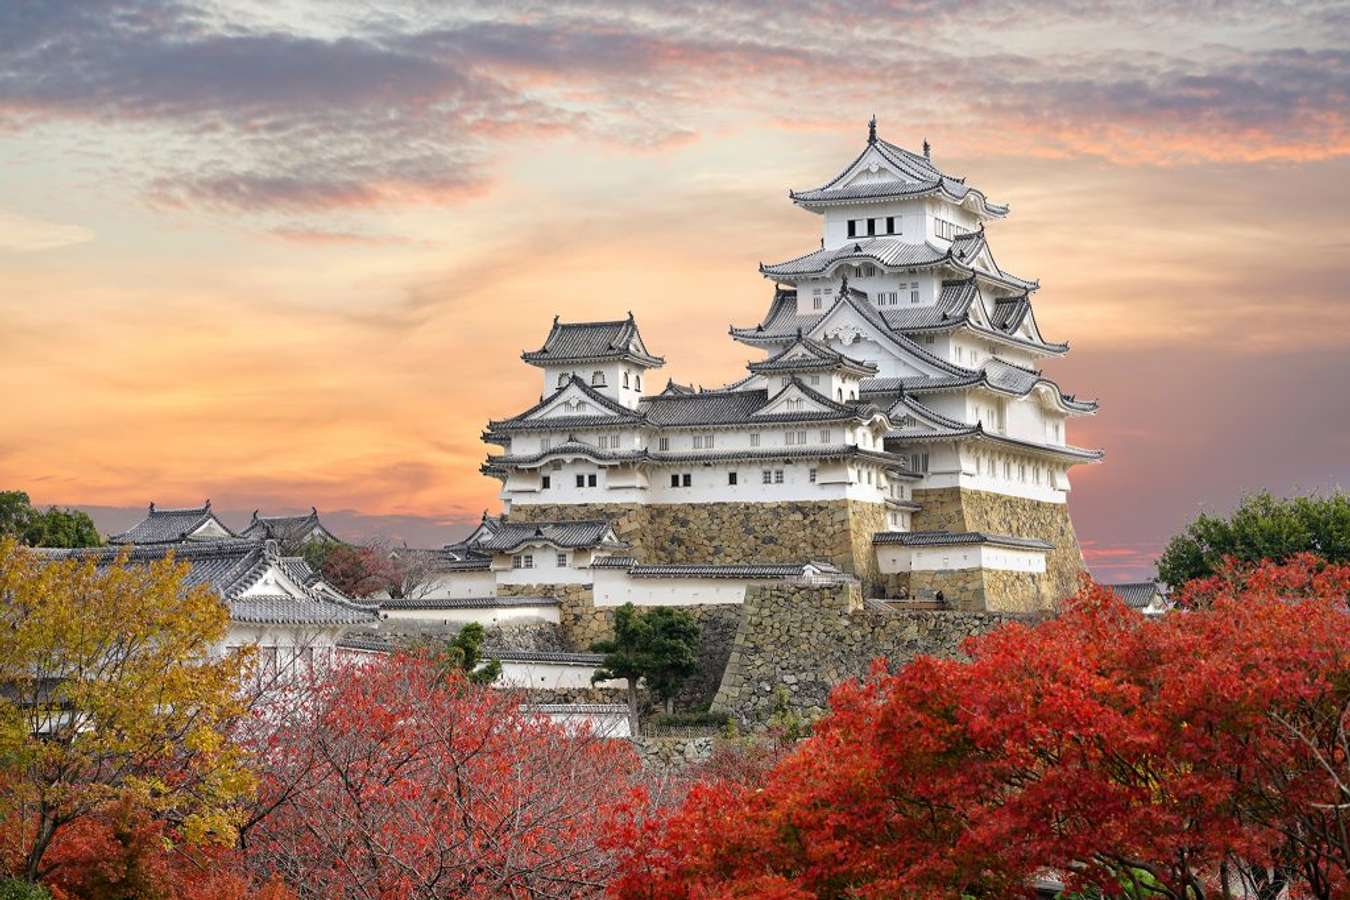 Khám phá bí mật lâu đài Himeji nổi tiếng nhất Nhật Bản